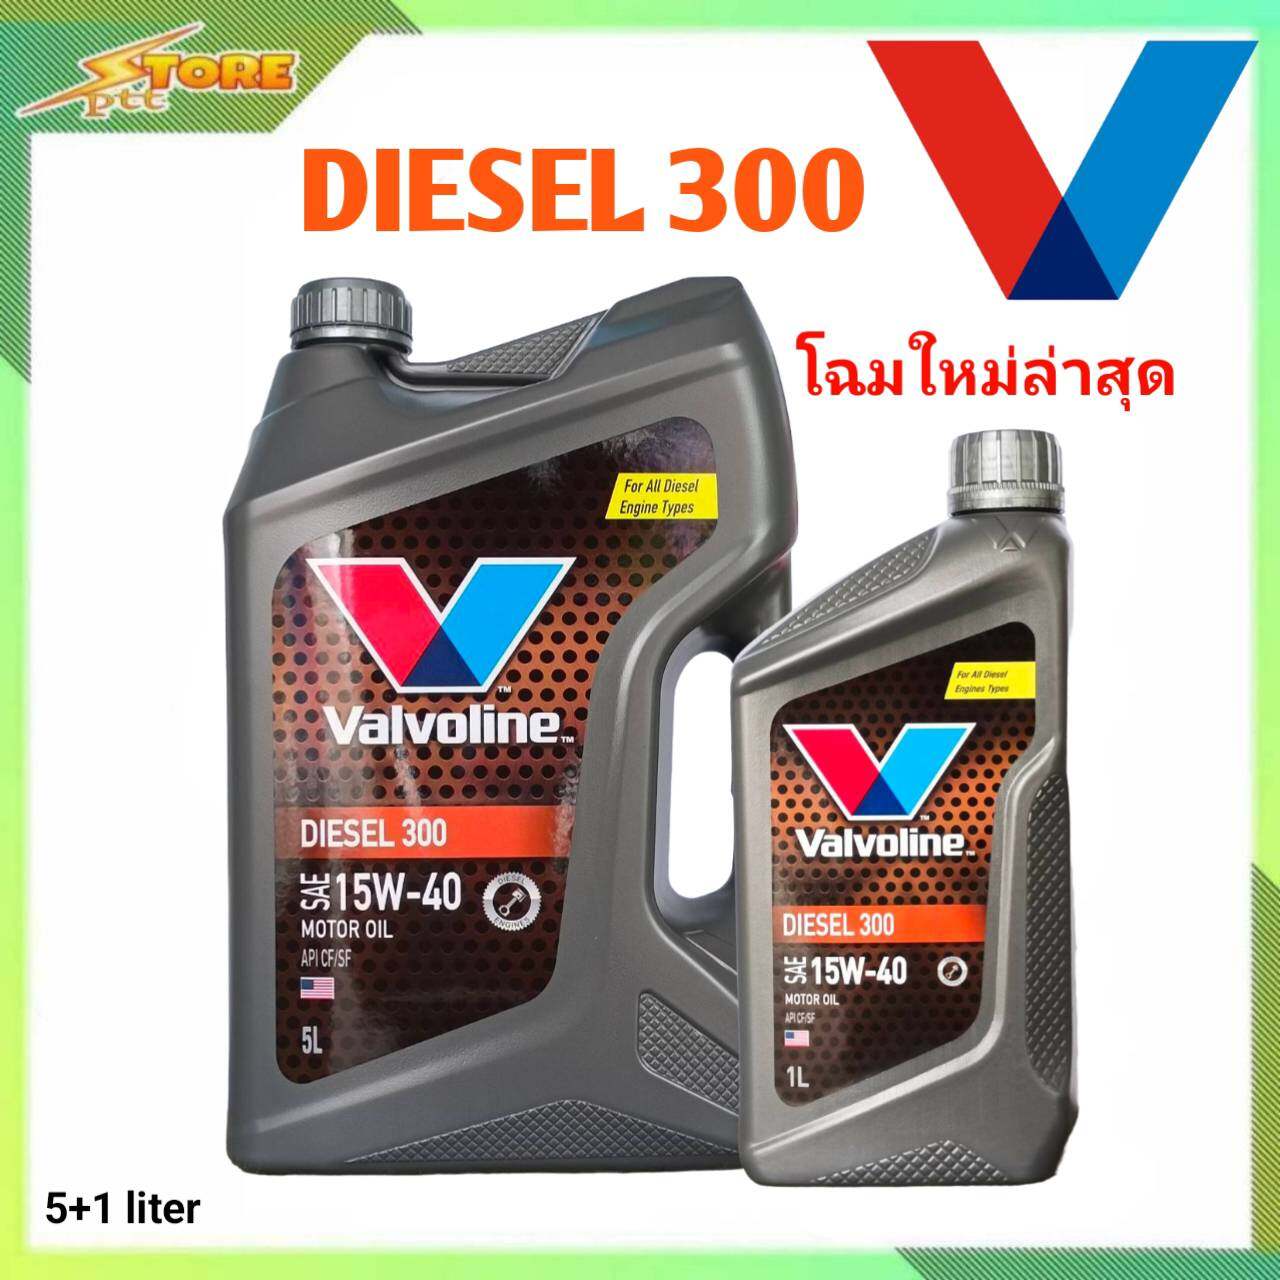 ข้อมูลเกี่ยวกับ น้ำมันเครื่อง Valvoline Diesel 300 15W-40 ขนาด 5+1 ลิตร กึ่งสังเคราะห์ ( น้ำมันเครื่องวาโวลีน ดีเซล 300 15W-40 )